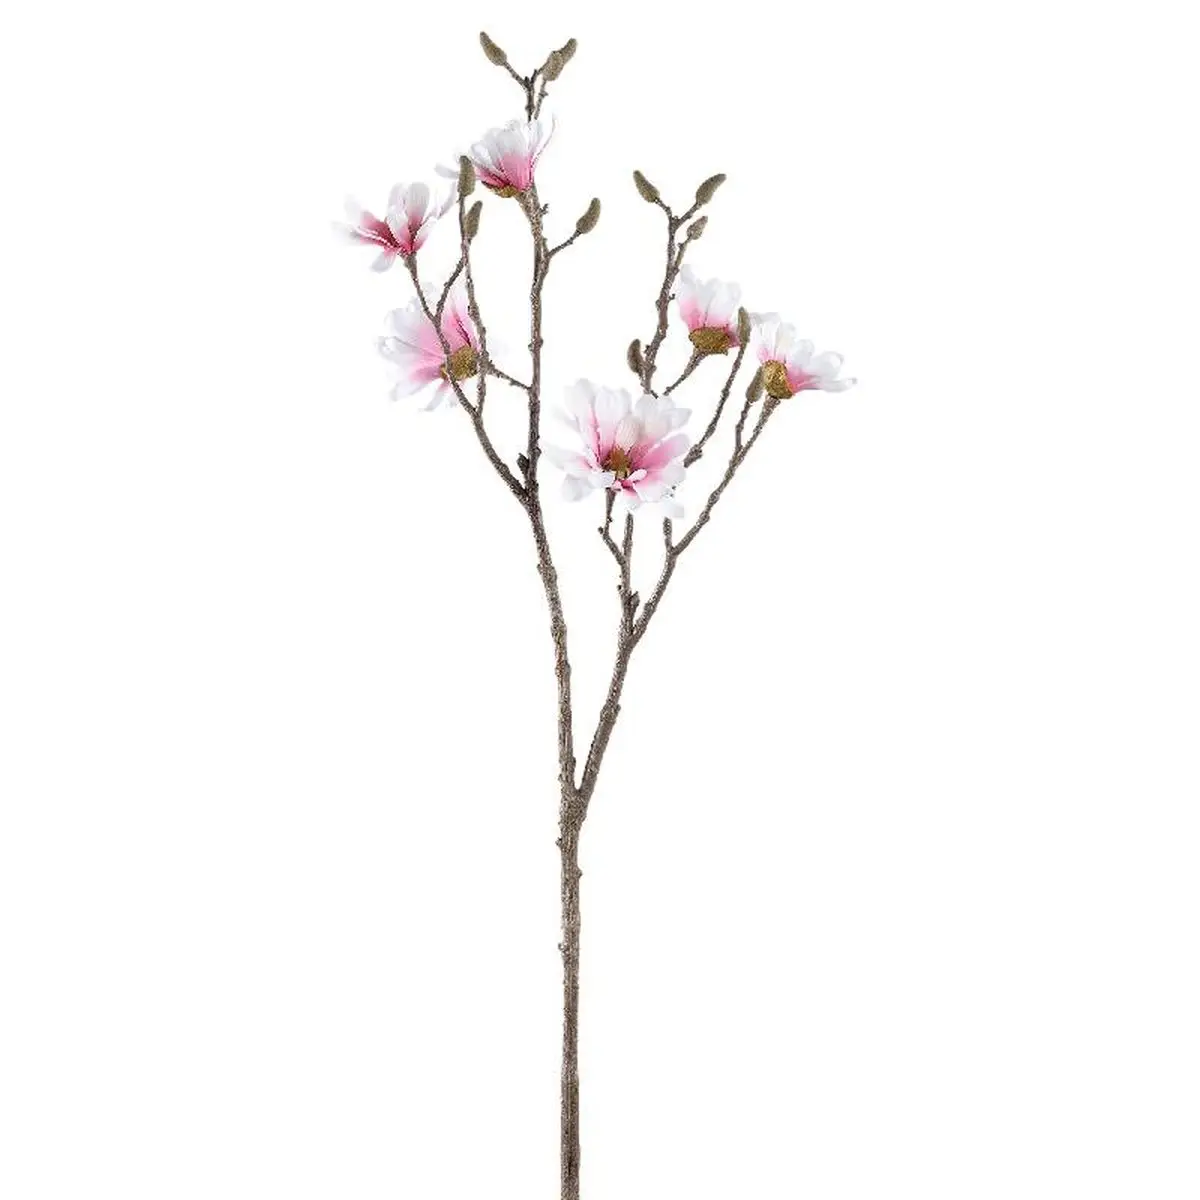 Magnolia Blume K眉nstliche